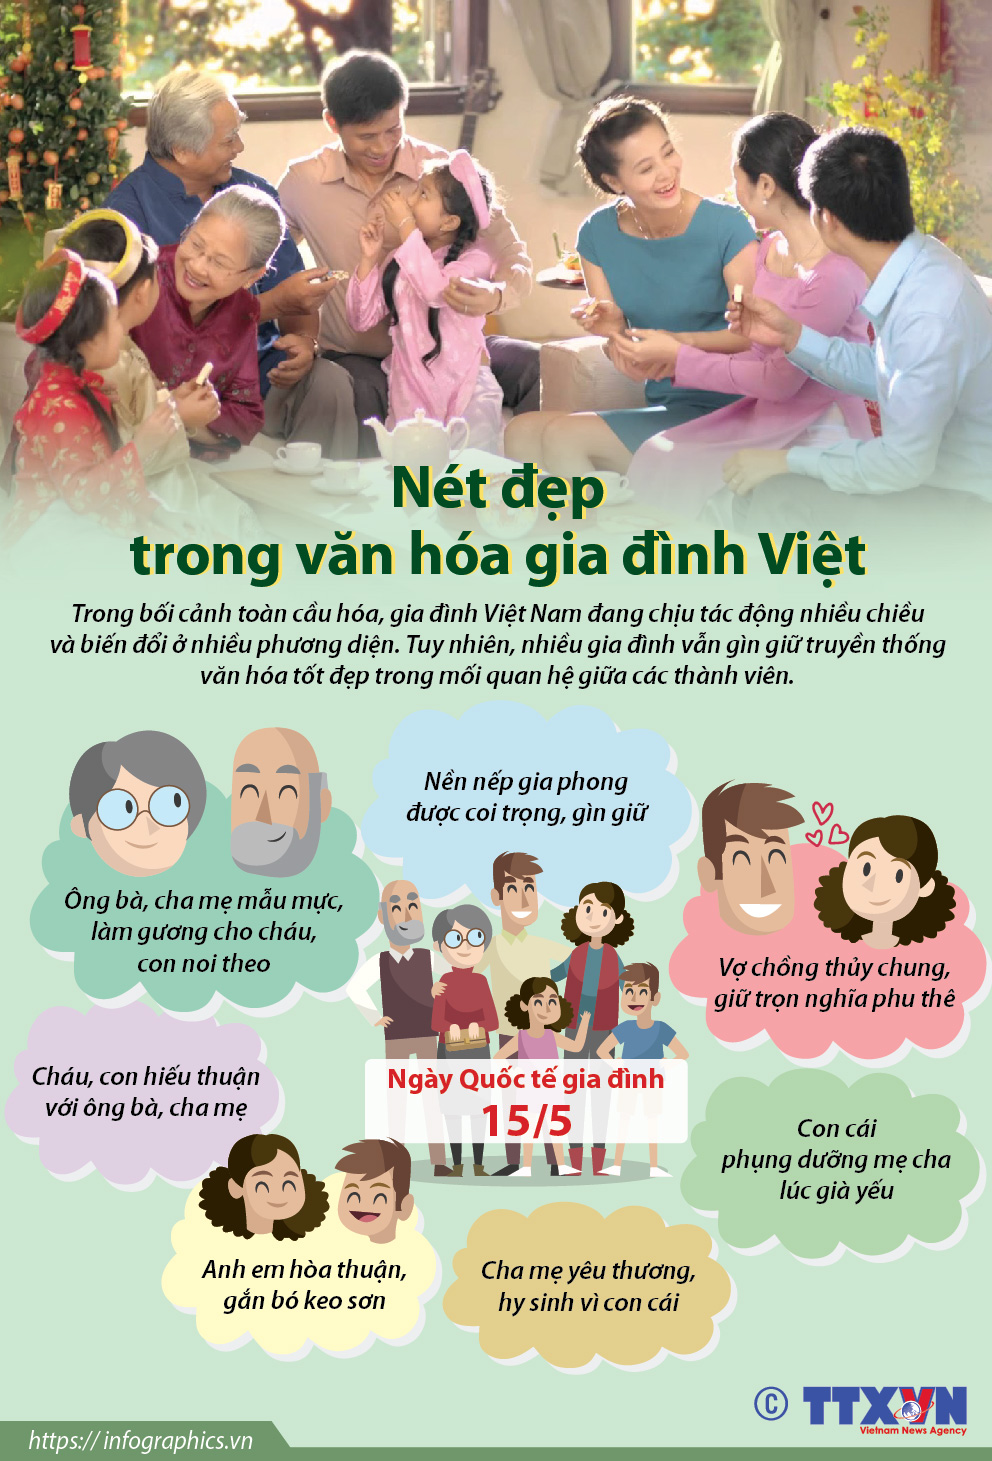 Văn hóa gia đình Việt: Năm 2024, với sự phát triển của xã hội, văn hóa gia đình ngày càng trở nên quan trọng. Hãy cùng tìm hiểu những giá trị văn hóa gia đình của người Việt qua hình ảnh đầy cảm xúc và ý nghĩa.